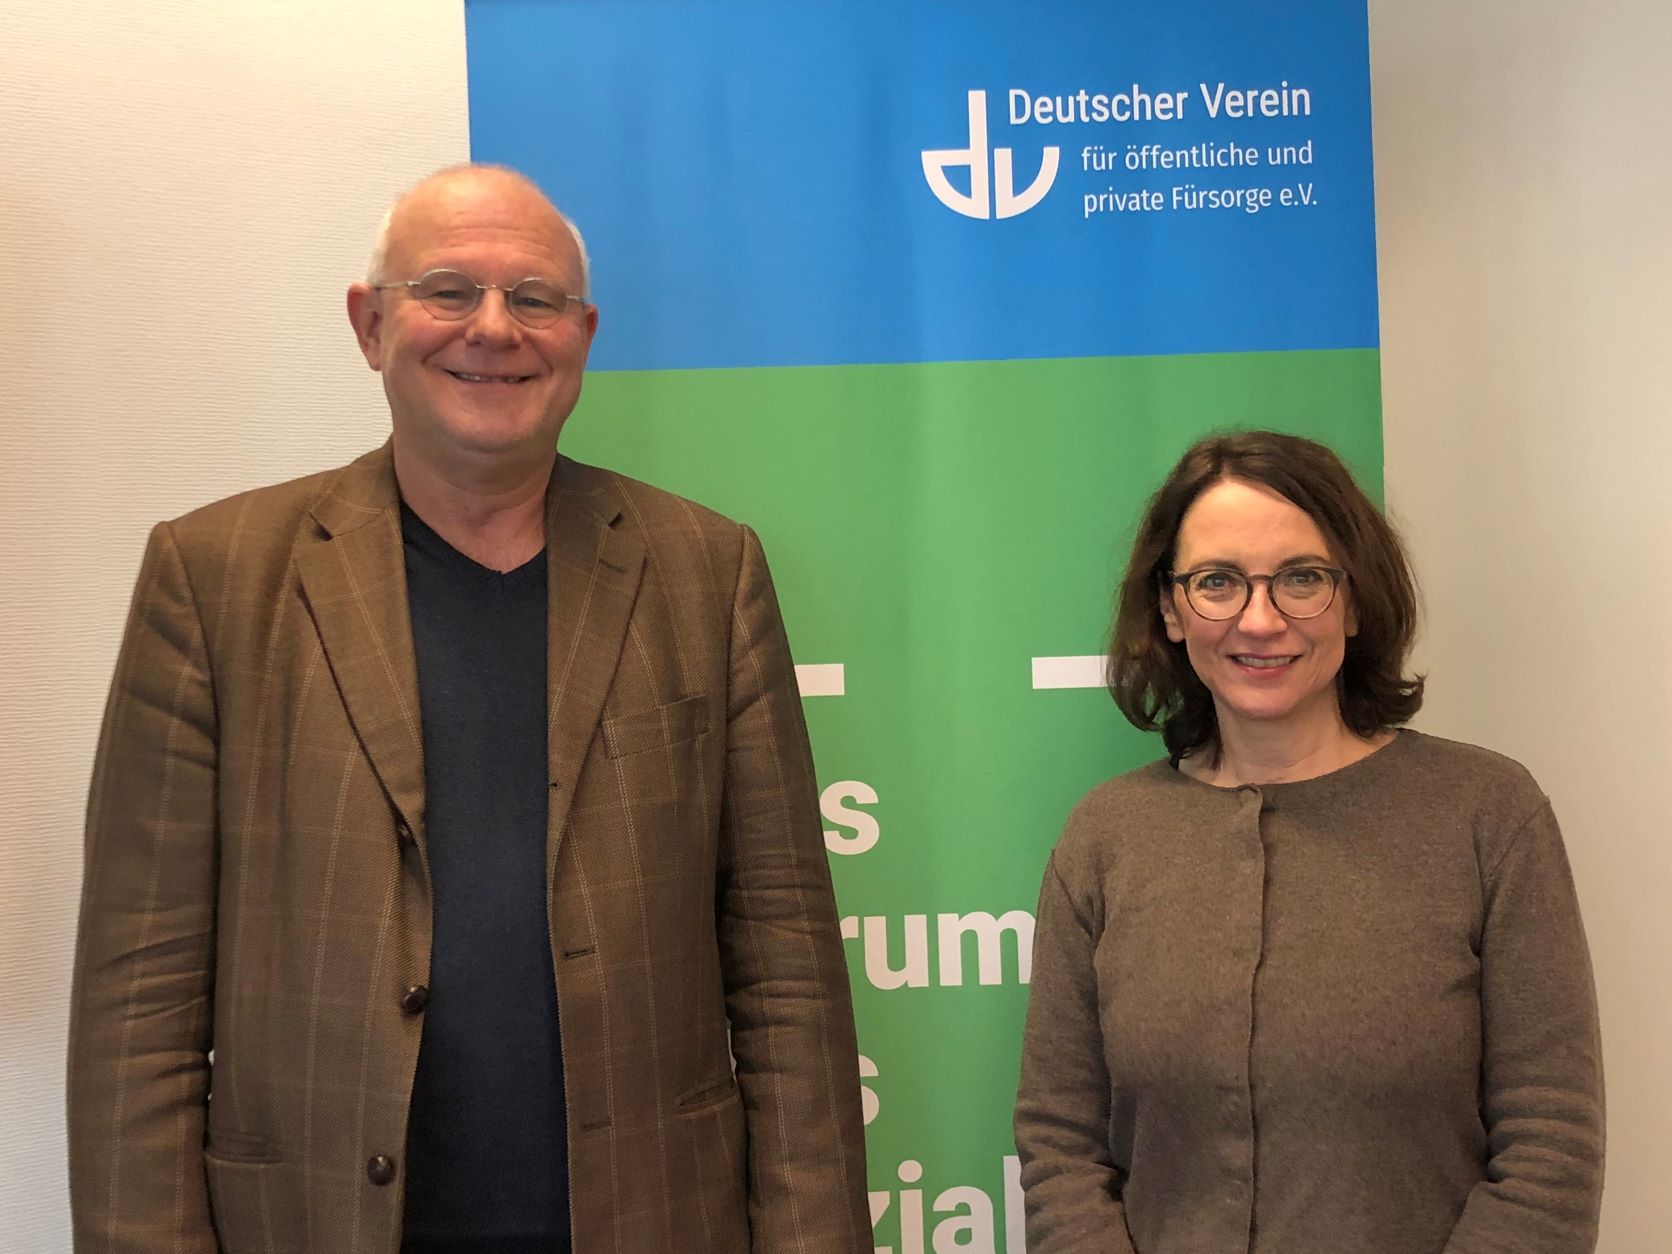 Bild: Michael Löher und Cornelia Schuh vor einem DV Banner